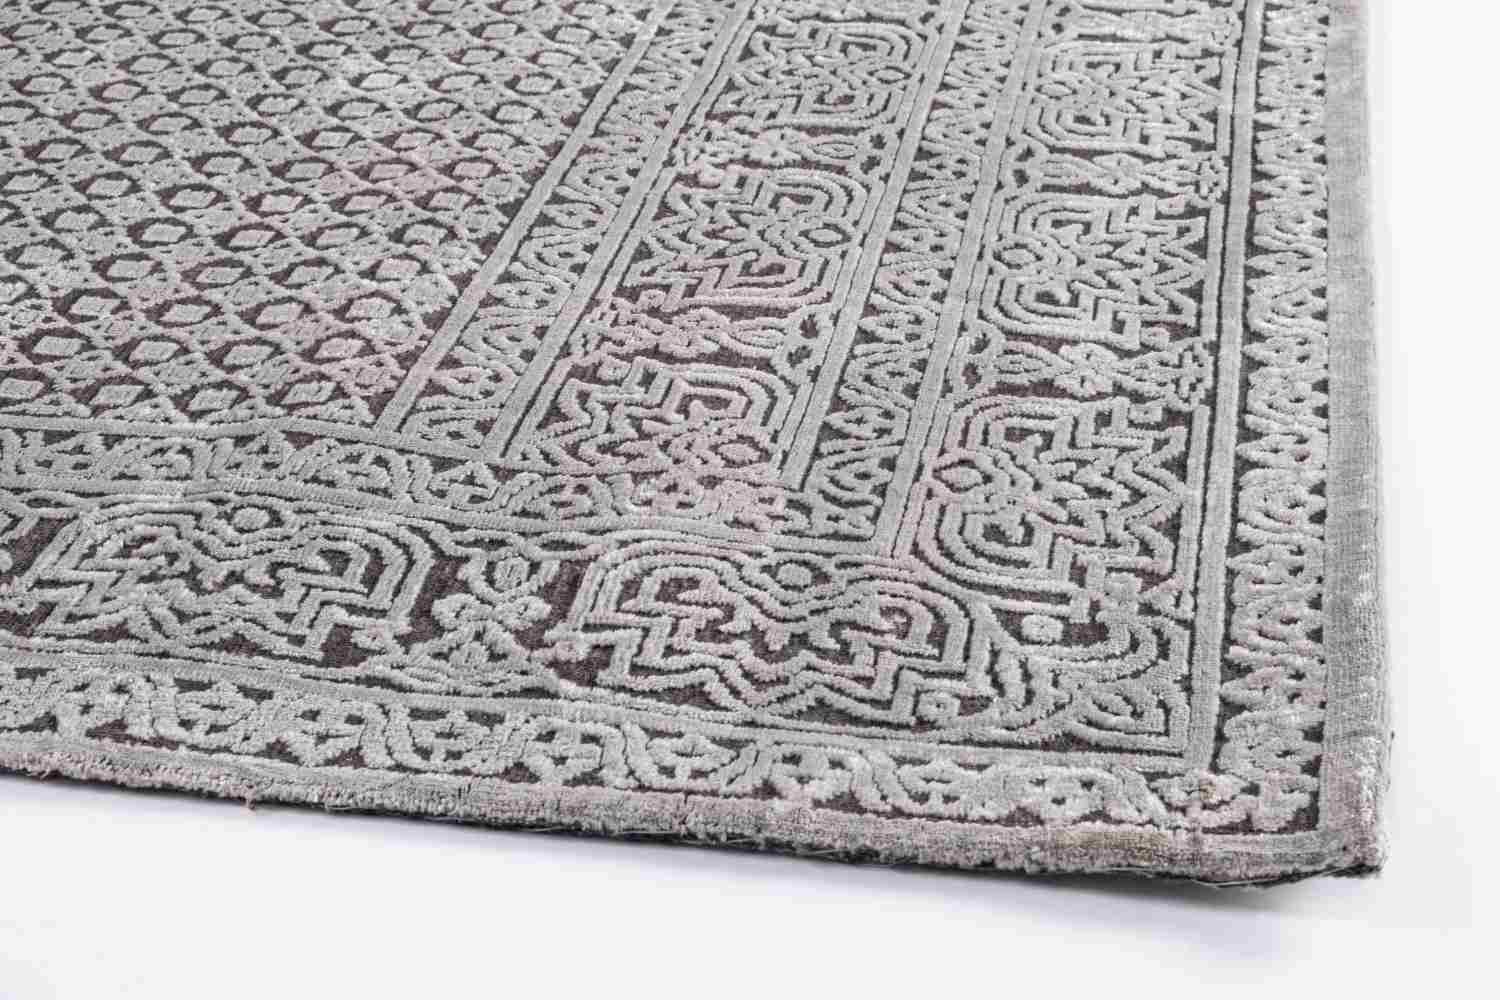 Der Teppich Panama überzeugt mit seinem klassischen Design. Gefertigt wurde die Vorderseite aus 100% Viskose und die Rückseite aus 100% Baumwolle. Der Teppich besitzt einen dunkelgrauen Farbton und die Maße von 160x230 cm.